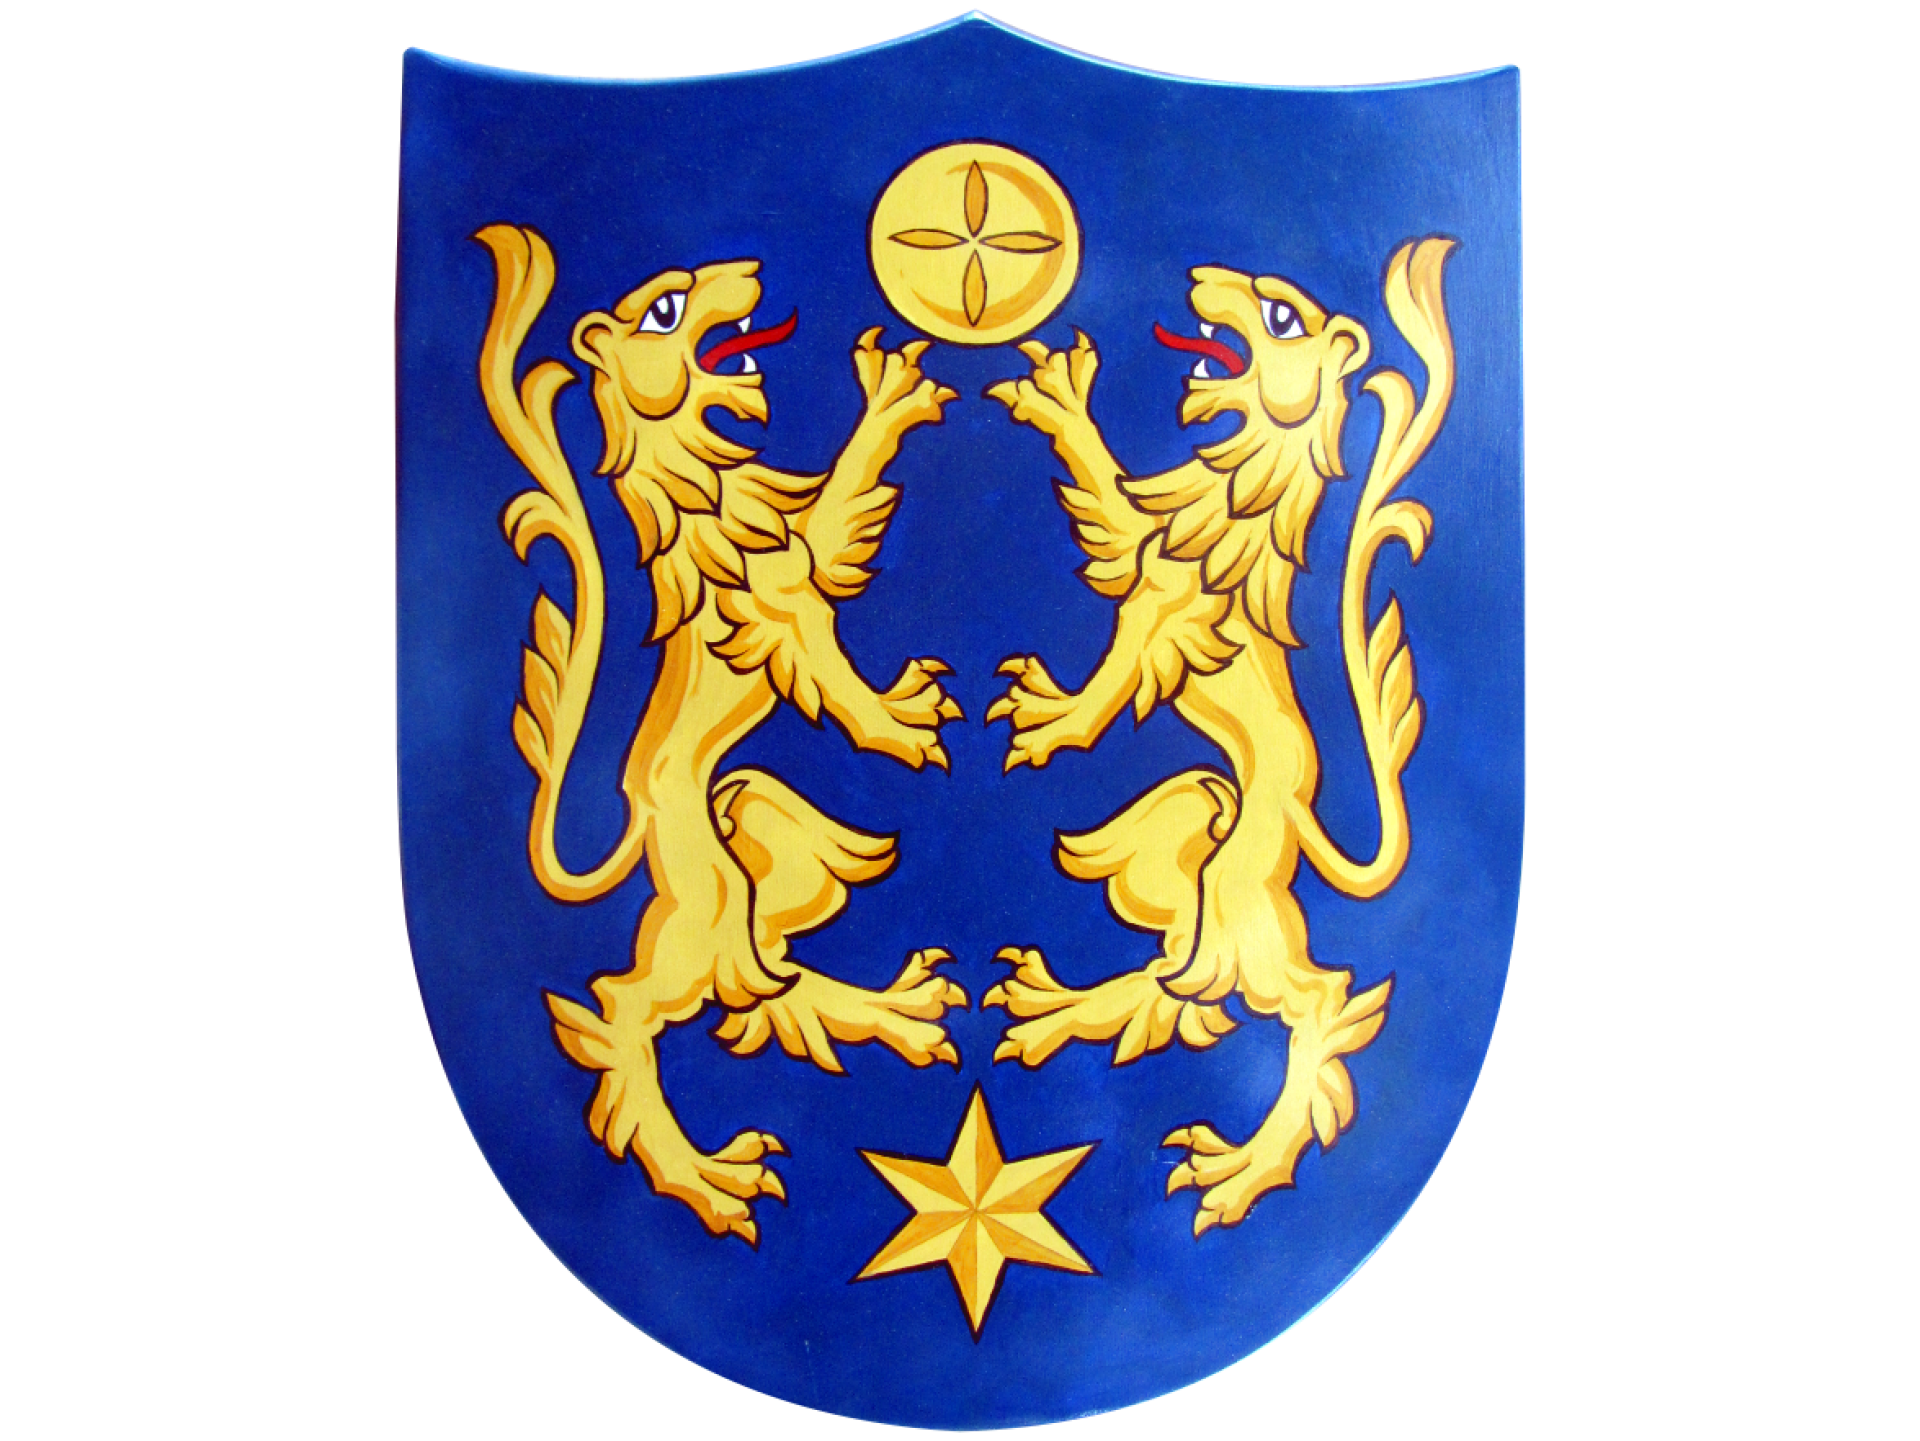 6-oruzje-i-heraldicki-rekviziti-4553393388.png